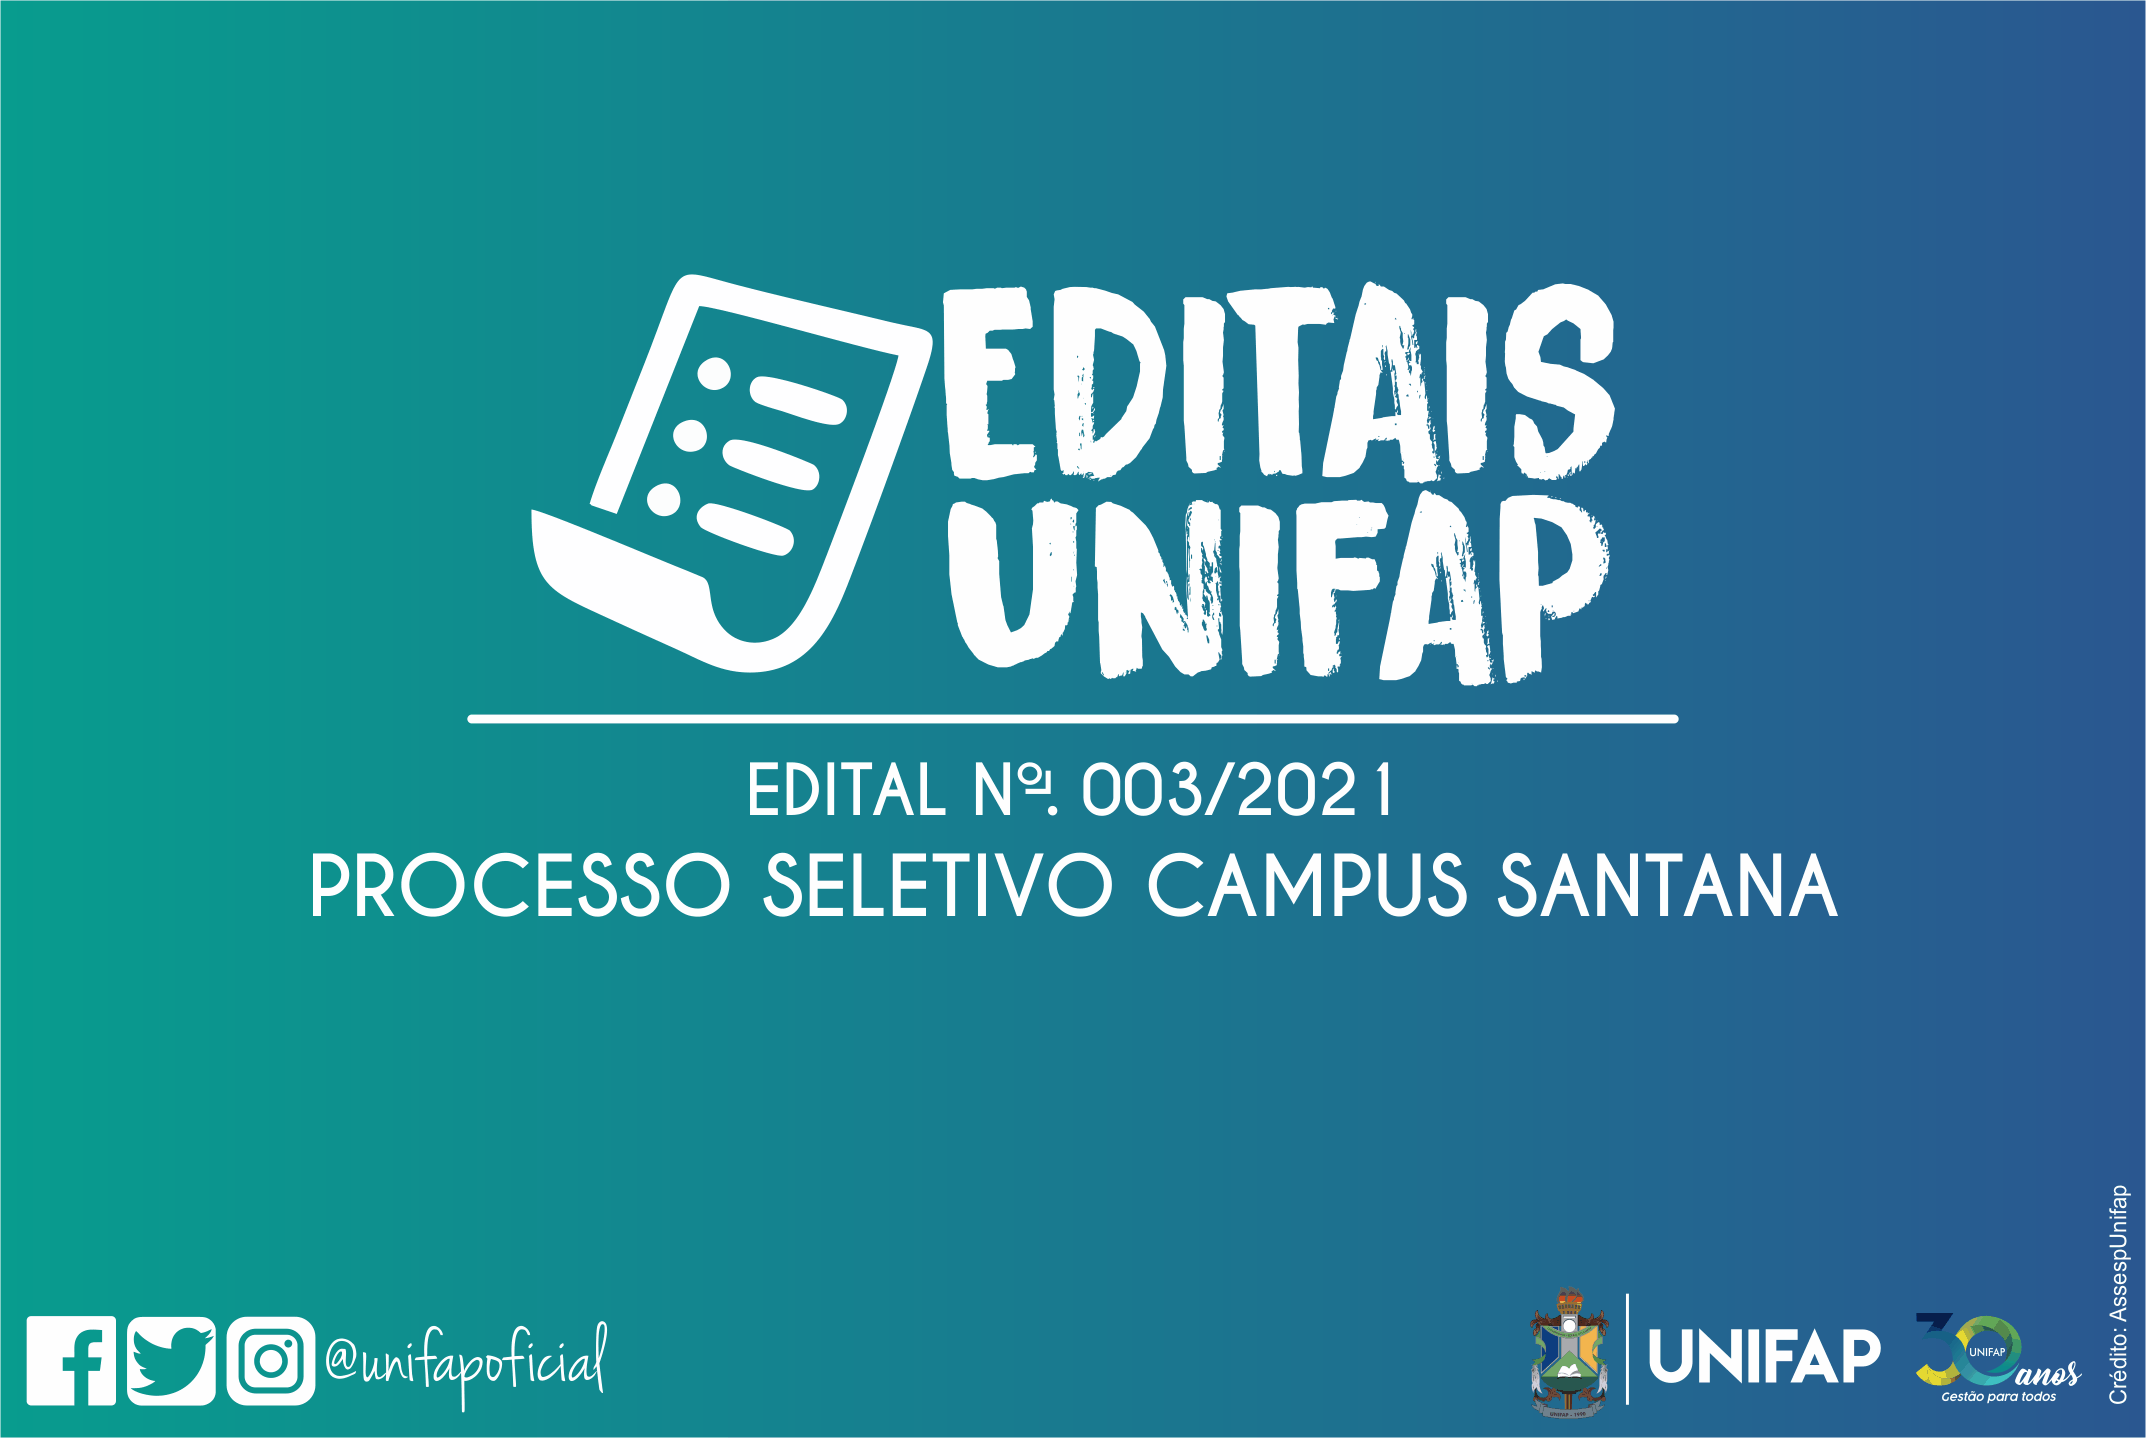 Inscrições para o Processo Seletivo/Campus Santana iniciaram neste dia 11